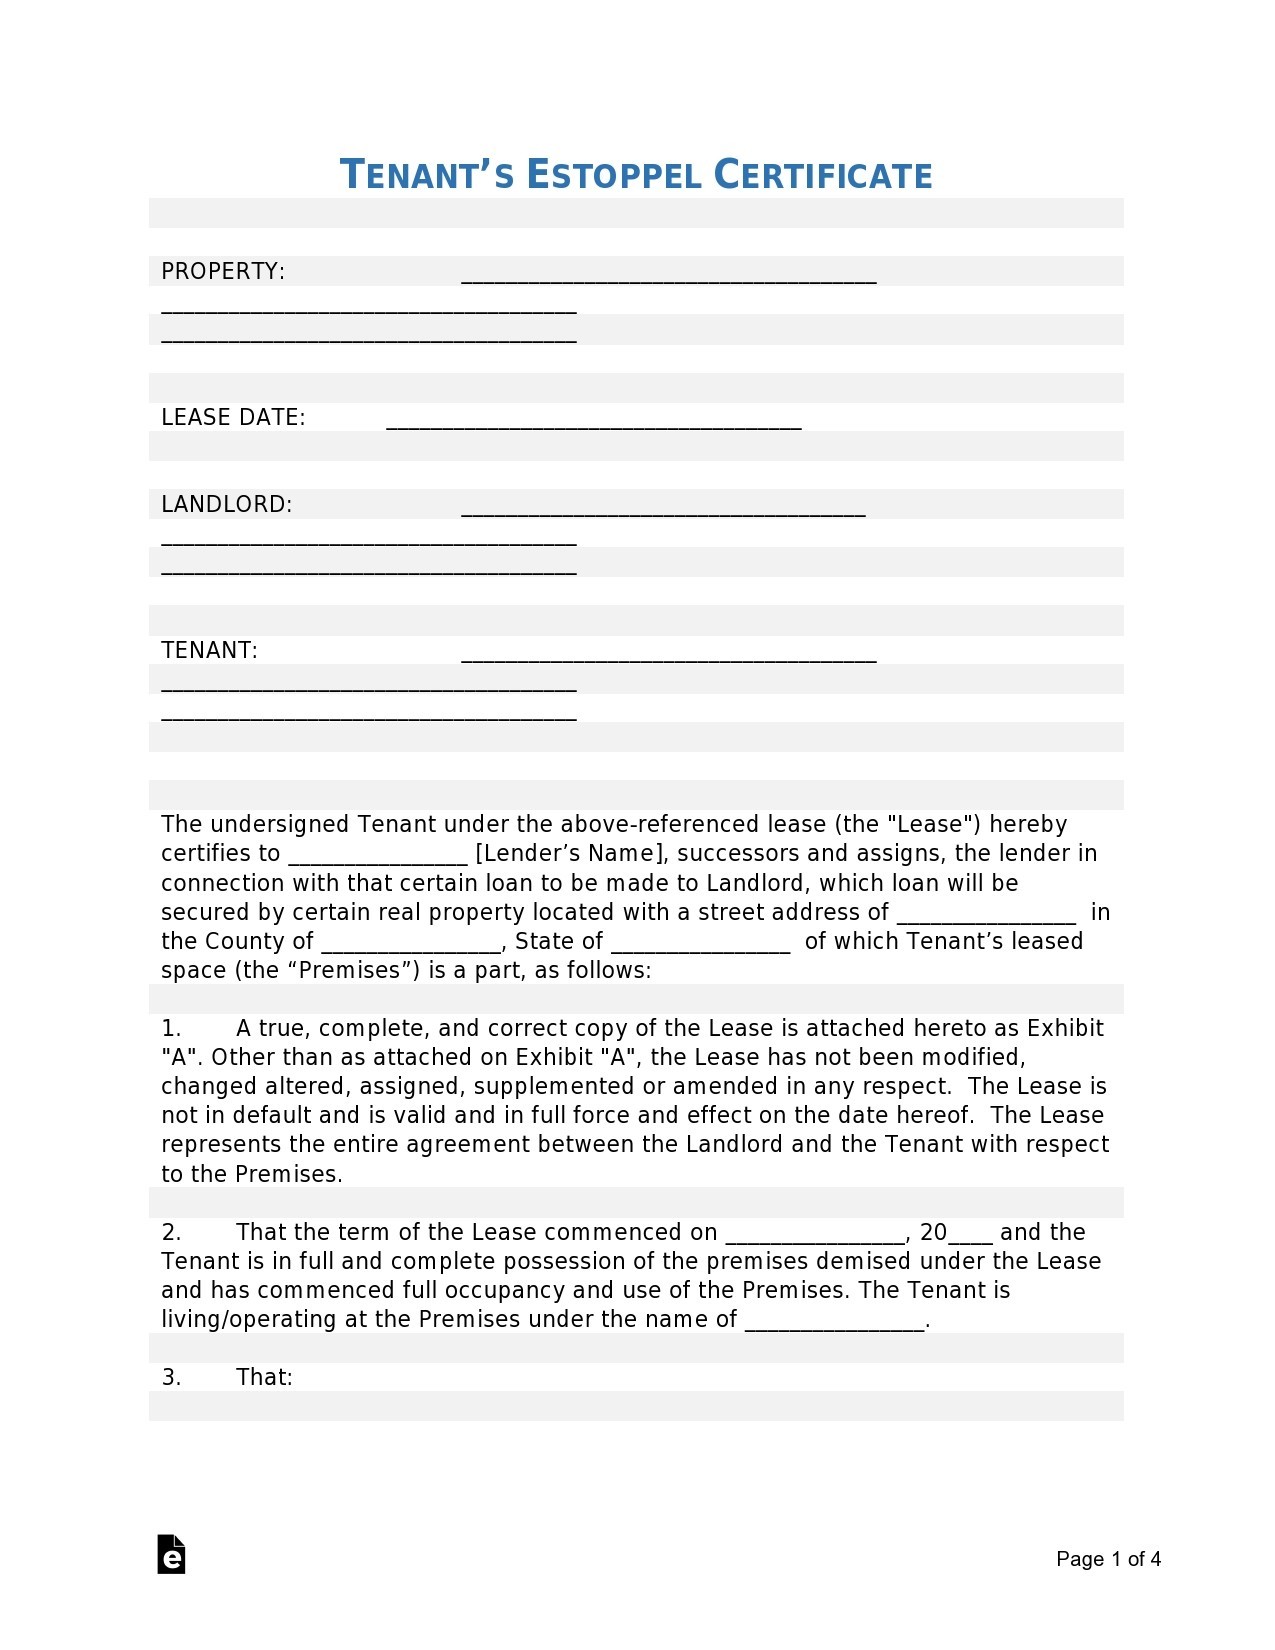 Free estoppel certificate form 37